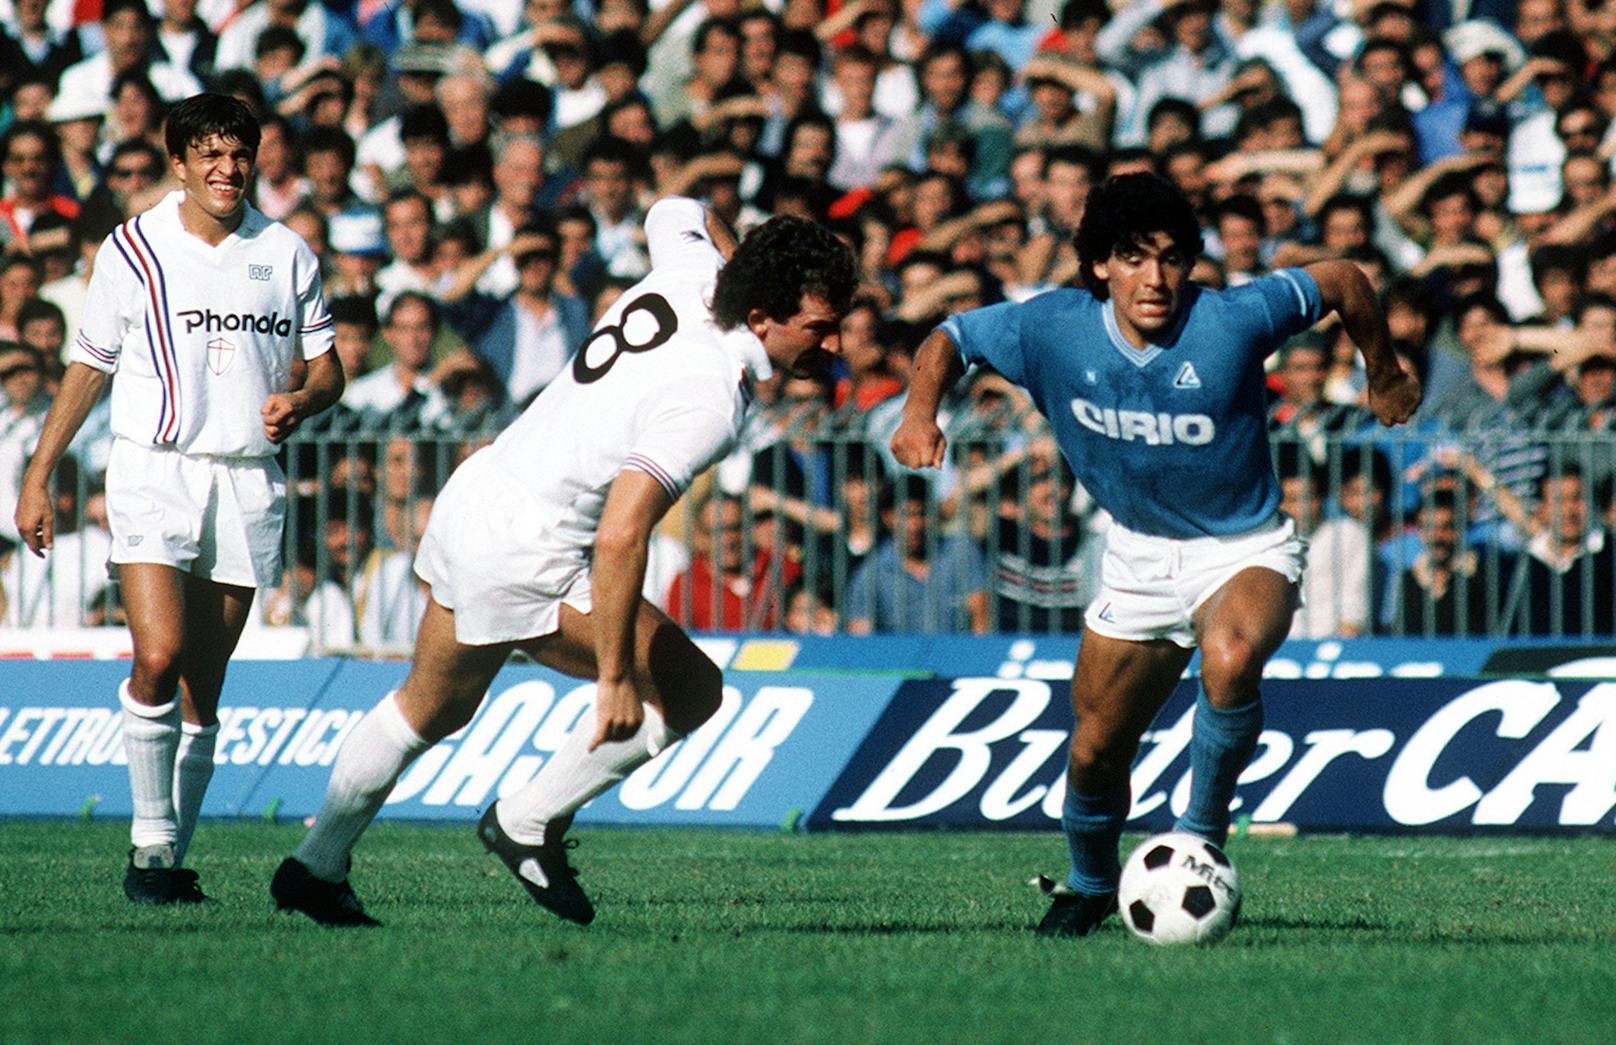 1984 wechselt er zu Napoli. Er spielt bis 91 für die Italiener. Noch heute wird er in Neapel vergöttert. 115 Tore in 259 Spiele, zwei italienische Meisterschaften – Maradona drückt dem Klub seinen Stempel auf. Er gerät in Neapel aber auch in die Fänge der Mafia und wird wegen Kokain-Missbrauchs gesperrt.